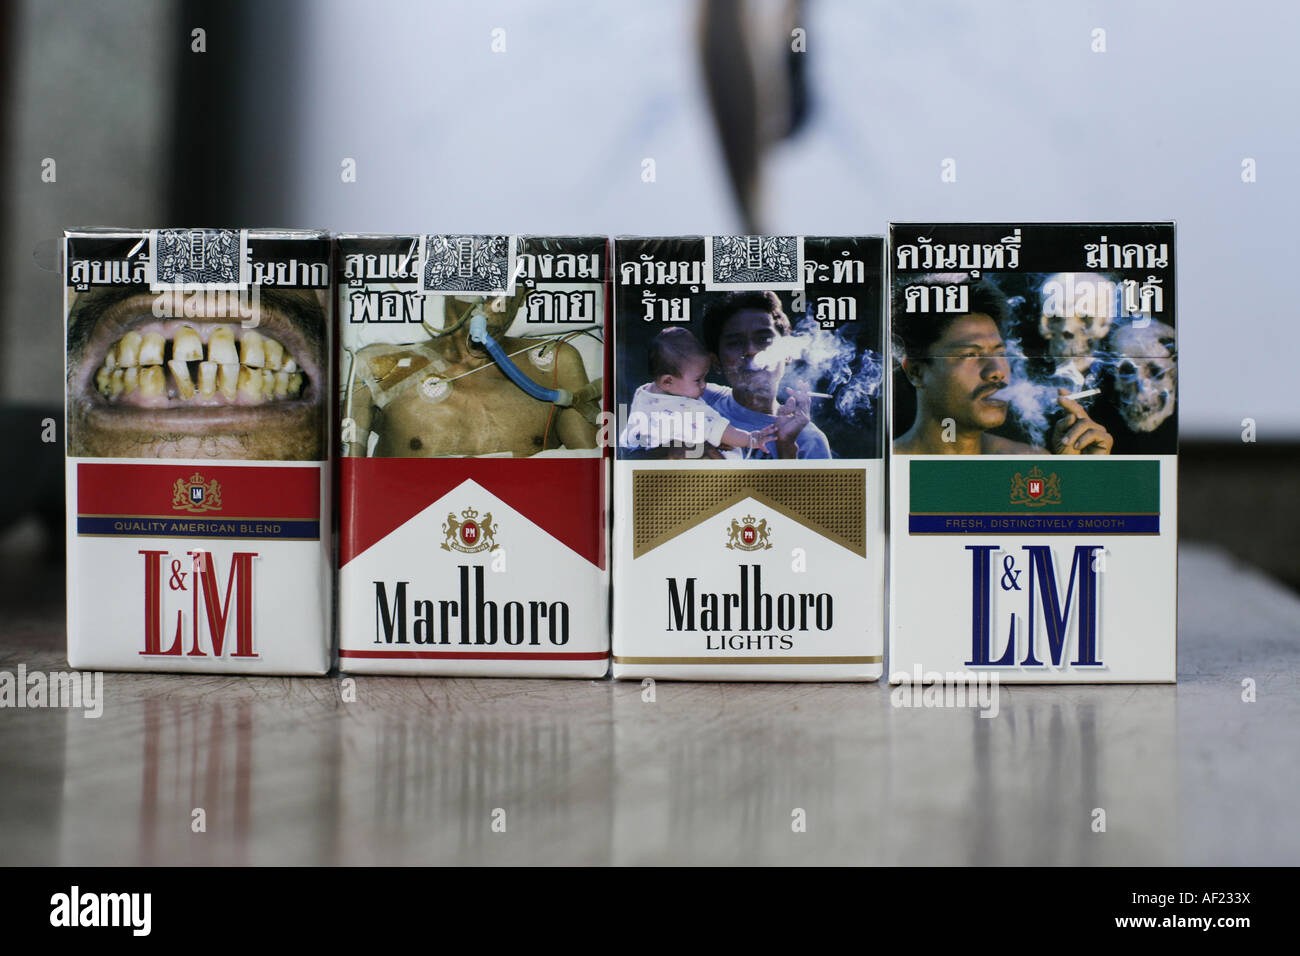 I pacchetti di sigarette con immagini di persone morte, malato di cancro, Foto Stock